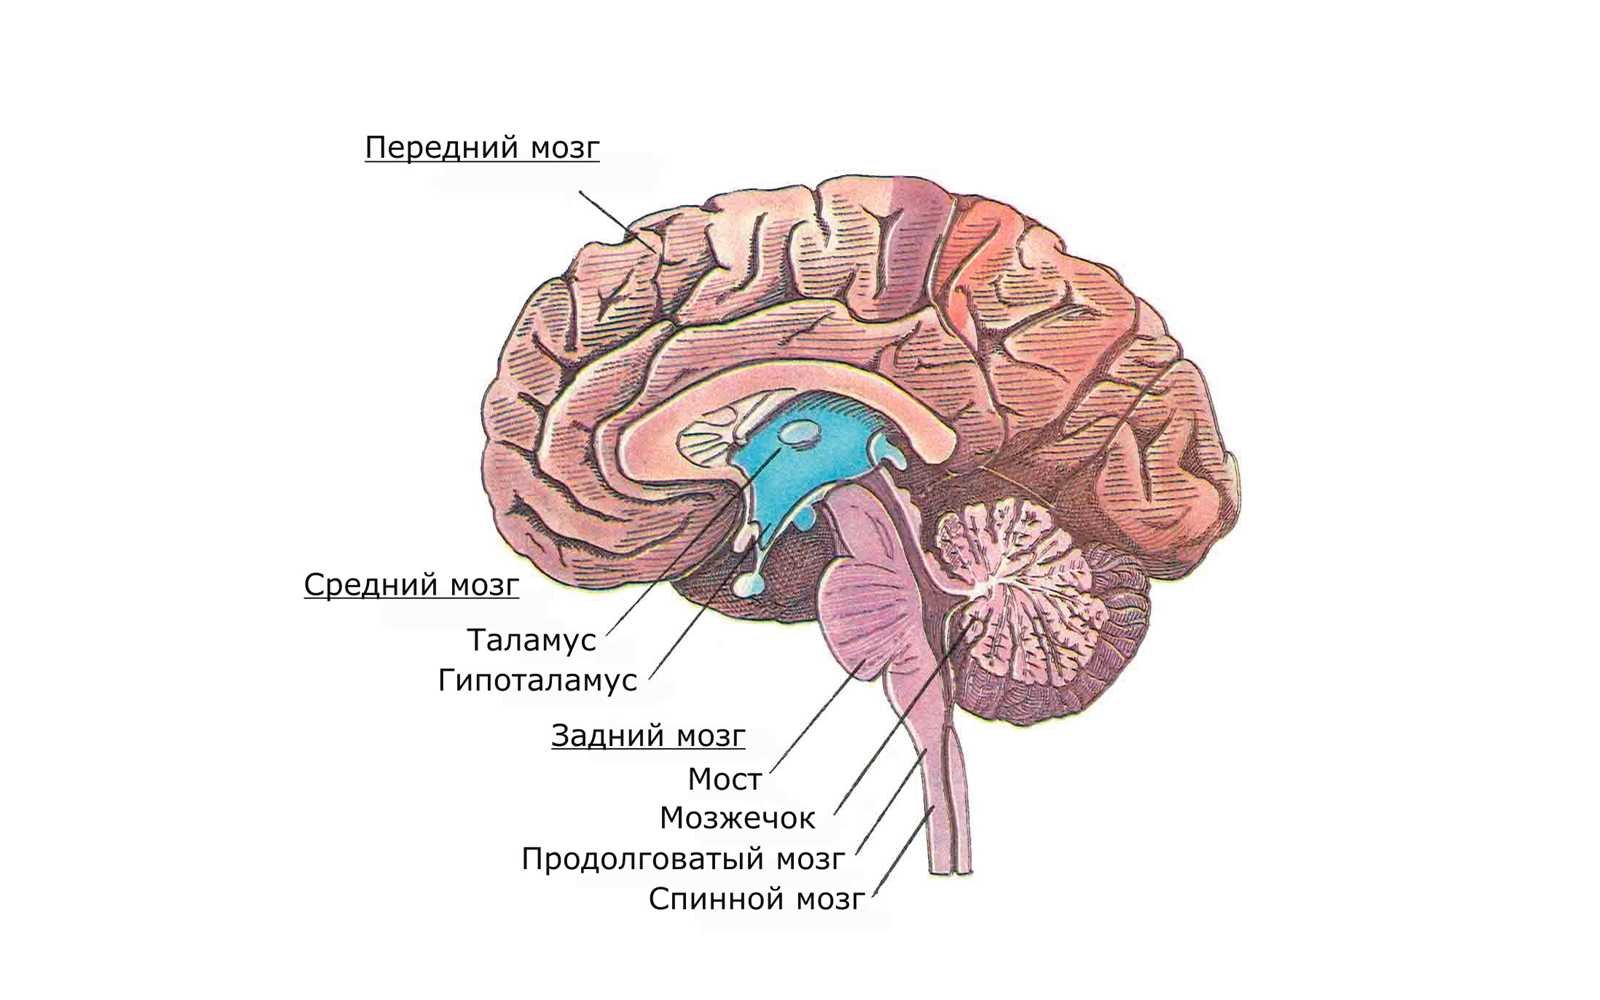 Мост мозга состоит из. Мост мозга анатомия. Задний мозг мост. Строение задних отделов головного мозга. Варолиев мост рисунок.